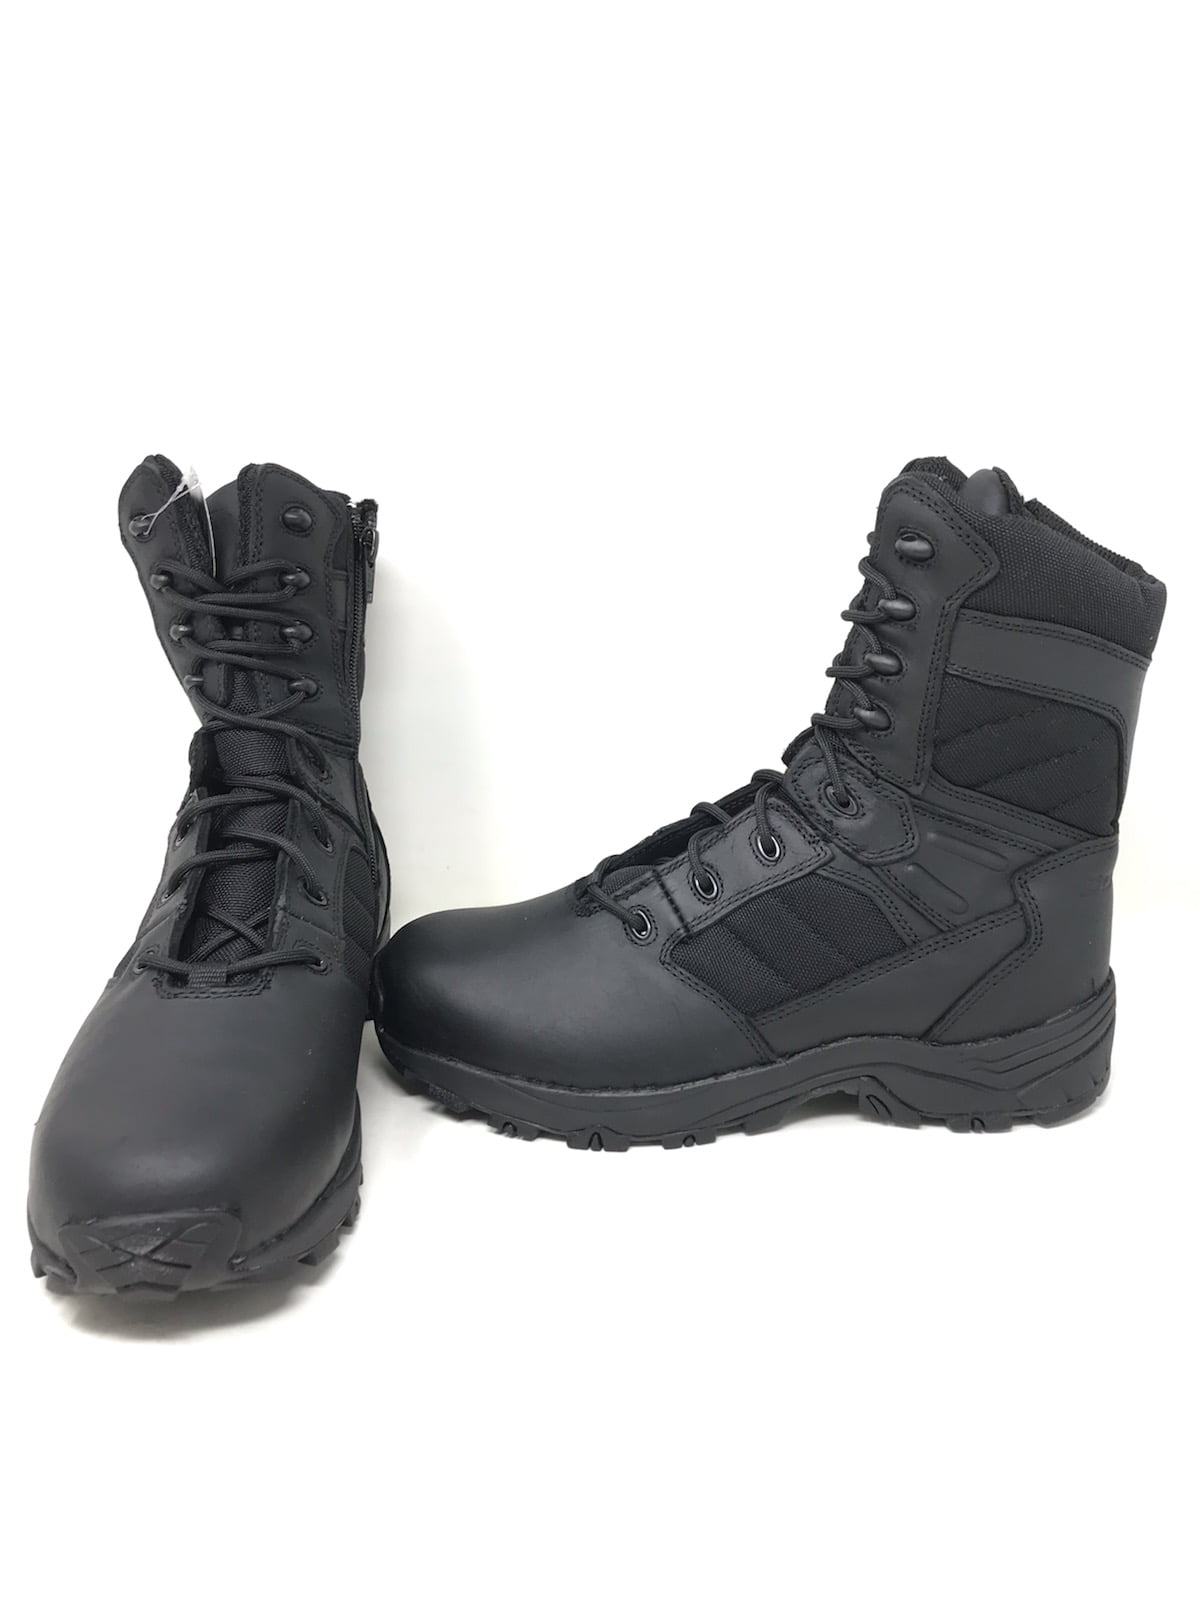 Corcoran Mens 6 Non-Metallic Tactical Boots with Side Zipper Black 7.5 Medium CV5002